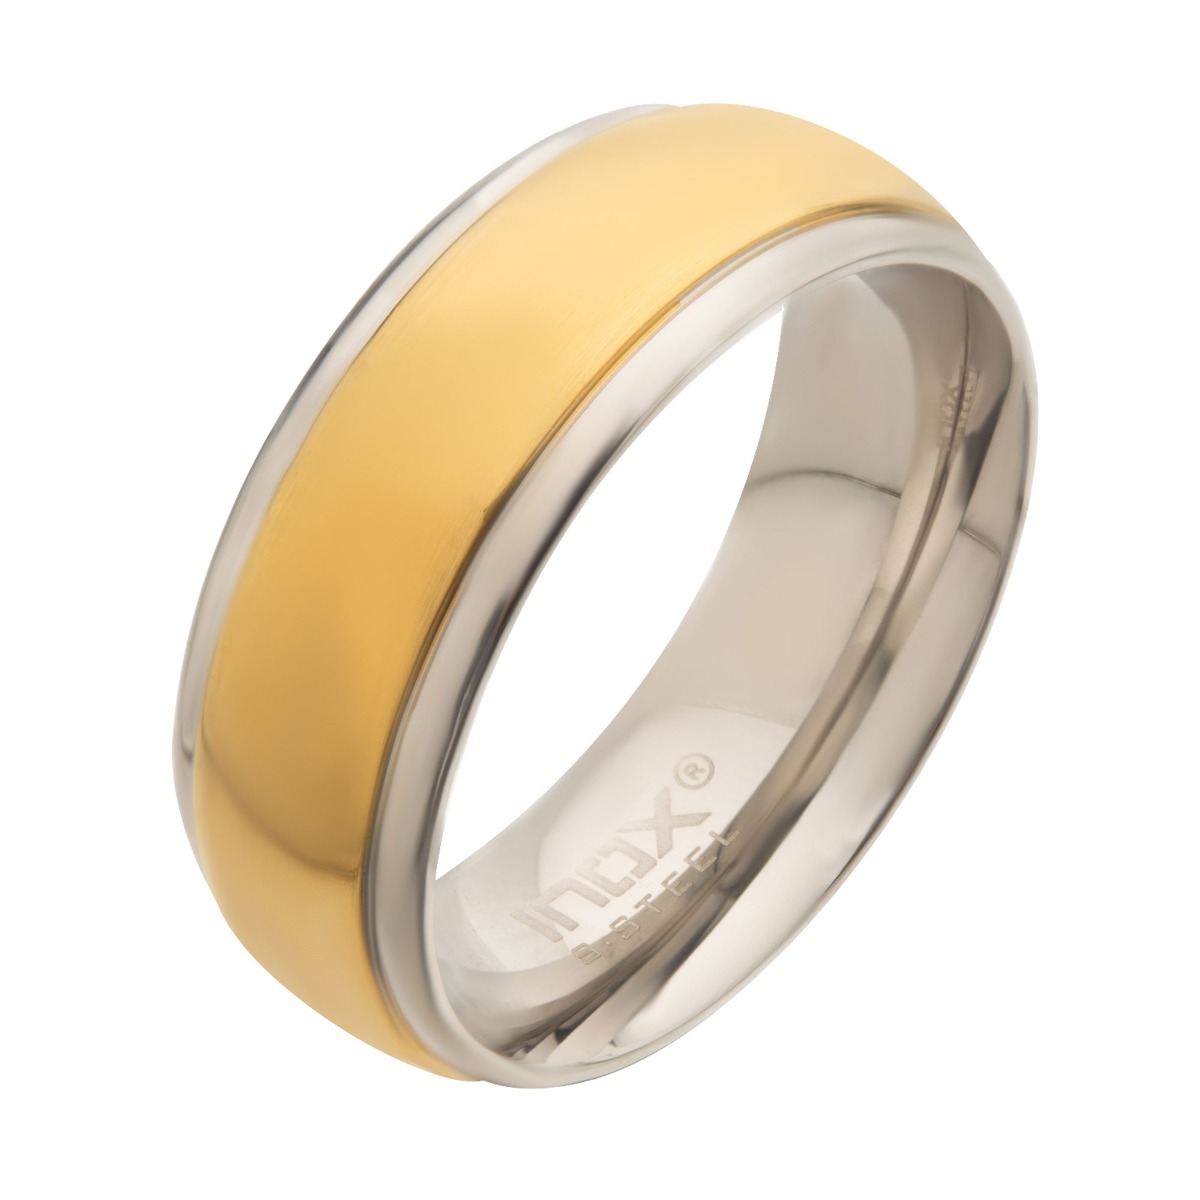 Steel & Gold Plated Patterned Design Ring Ken Walker Jewelers Gig Harbor, WA